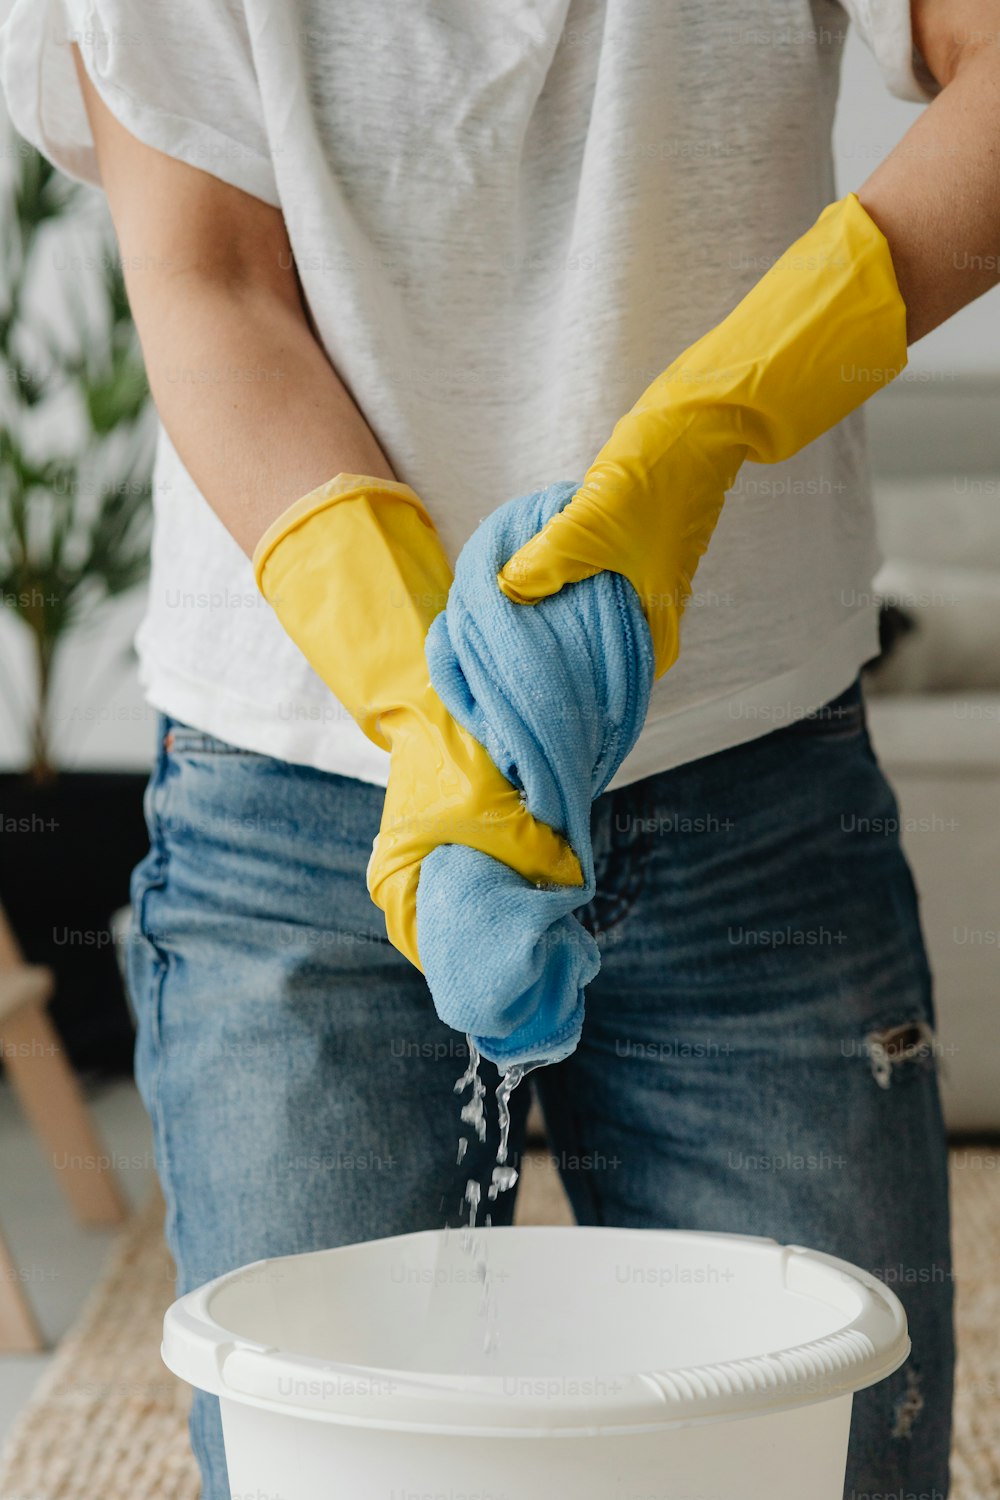 Eine Person in gelben Handschuhen wäscht einen Eimer